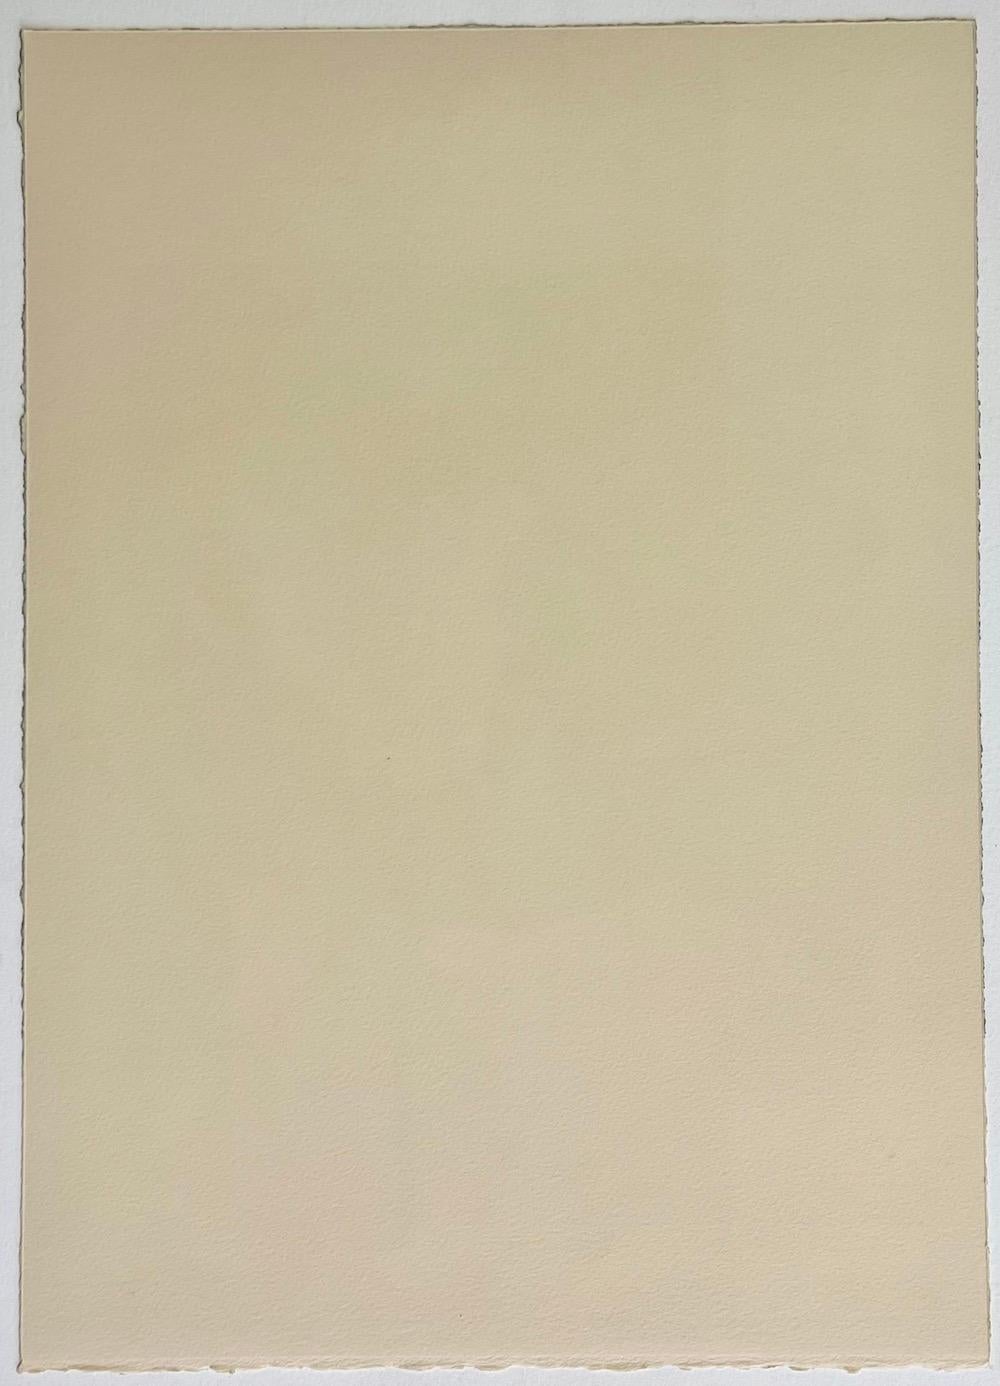 Two Nudes Posing With Armchair est une lithographie originale sur pierre, dessinée à la main et attribuée à l'artiste pop américain Mel Ramos. Elle a été imprimée à Bank Street Atelier NYC vers 1970 avec des encres noire, olive, tan et orange sur du